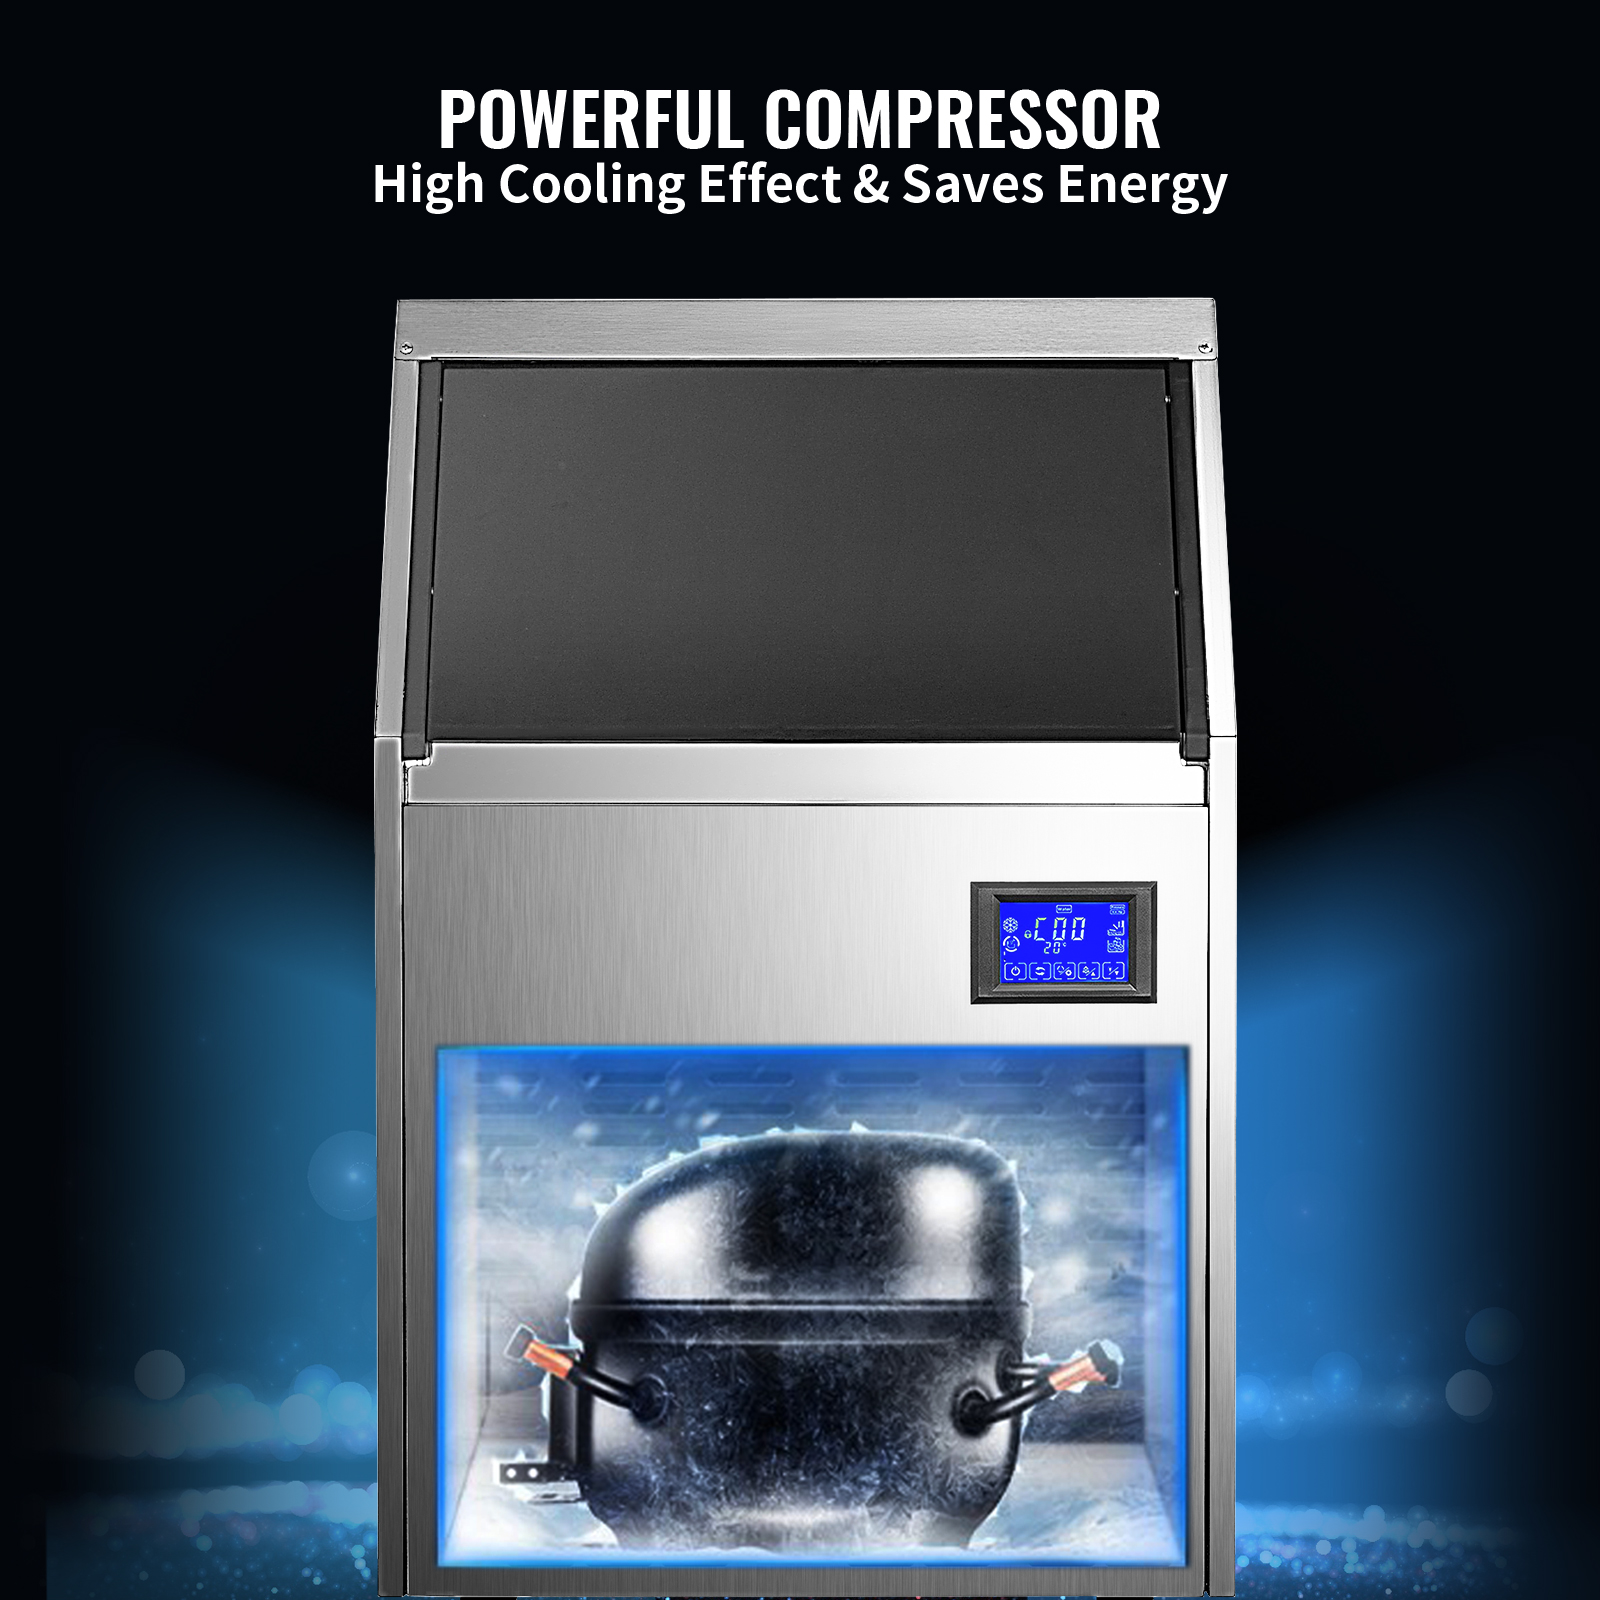 VEVOR 110 V máquina comercial de hielo 110 kg/24 horas, máquina